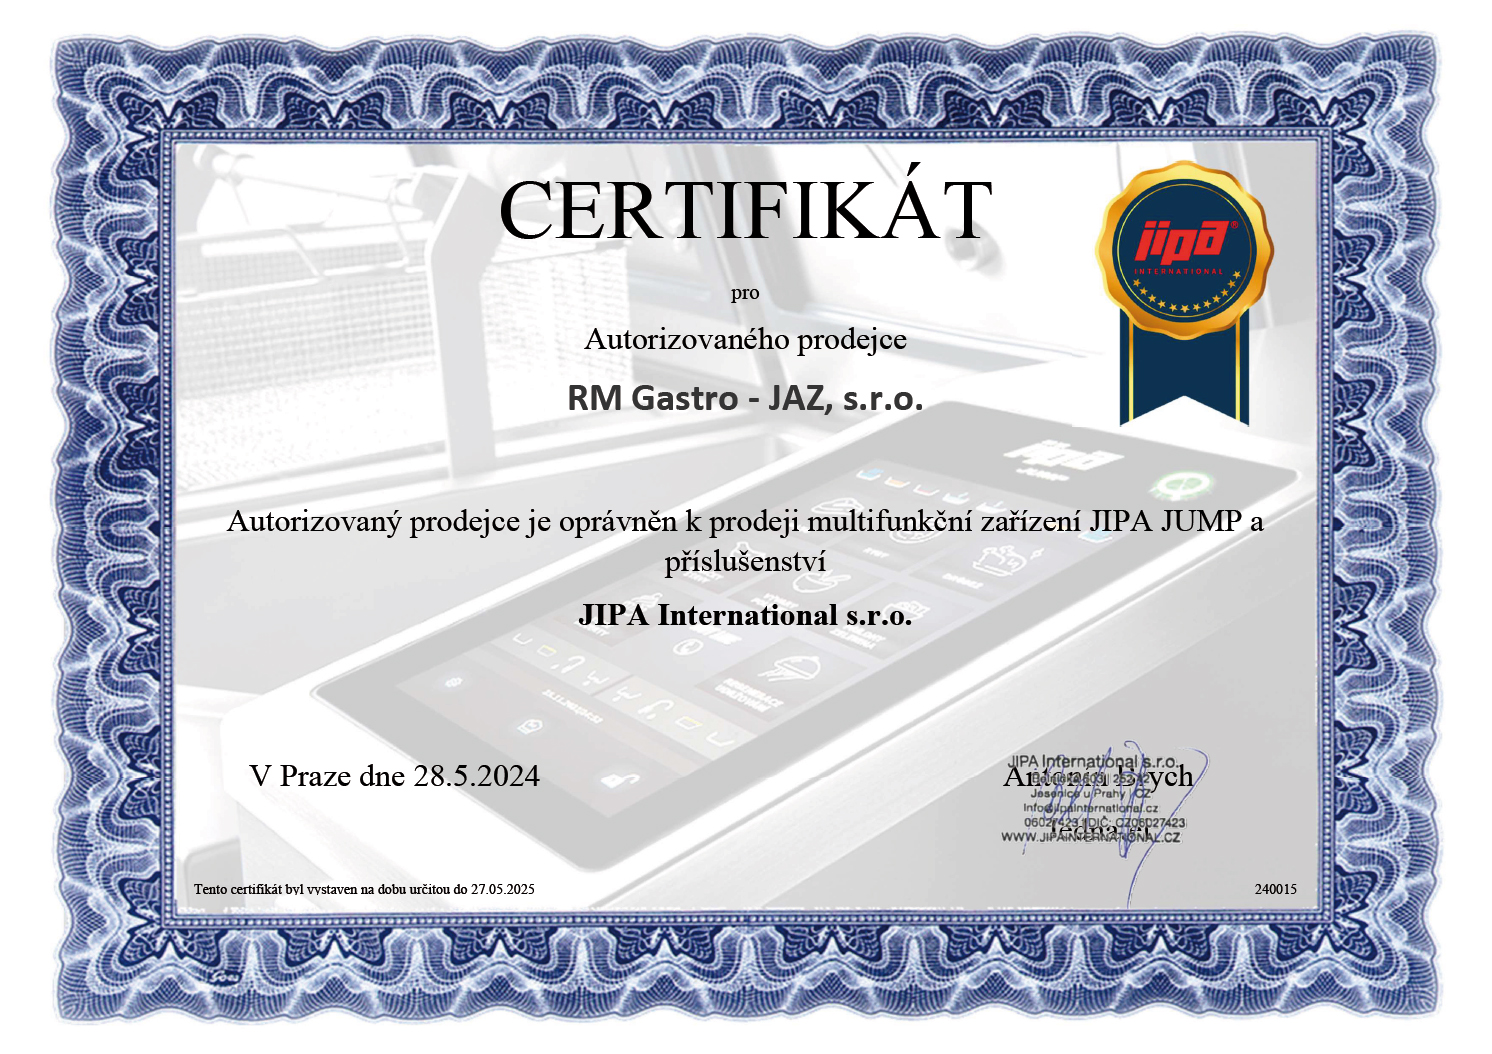 Certifikt JIPA pre obchod